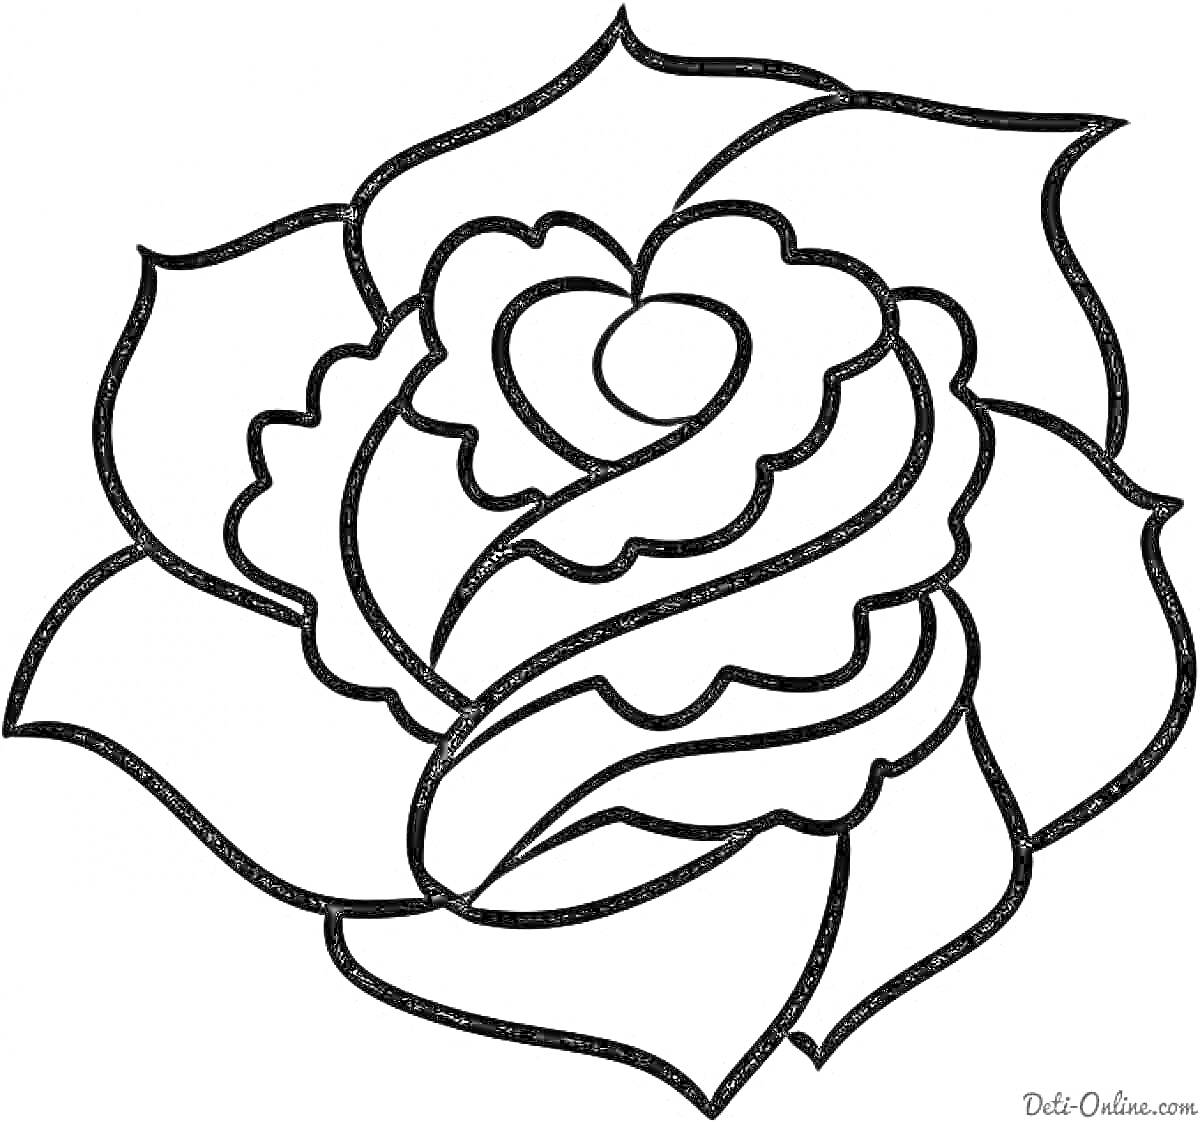 Раскраска Чёрно-белая раскраска розы с тремя видимыми лепестками и завитыми центральными лепестками